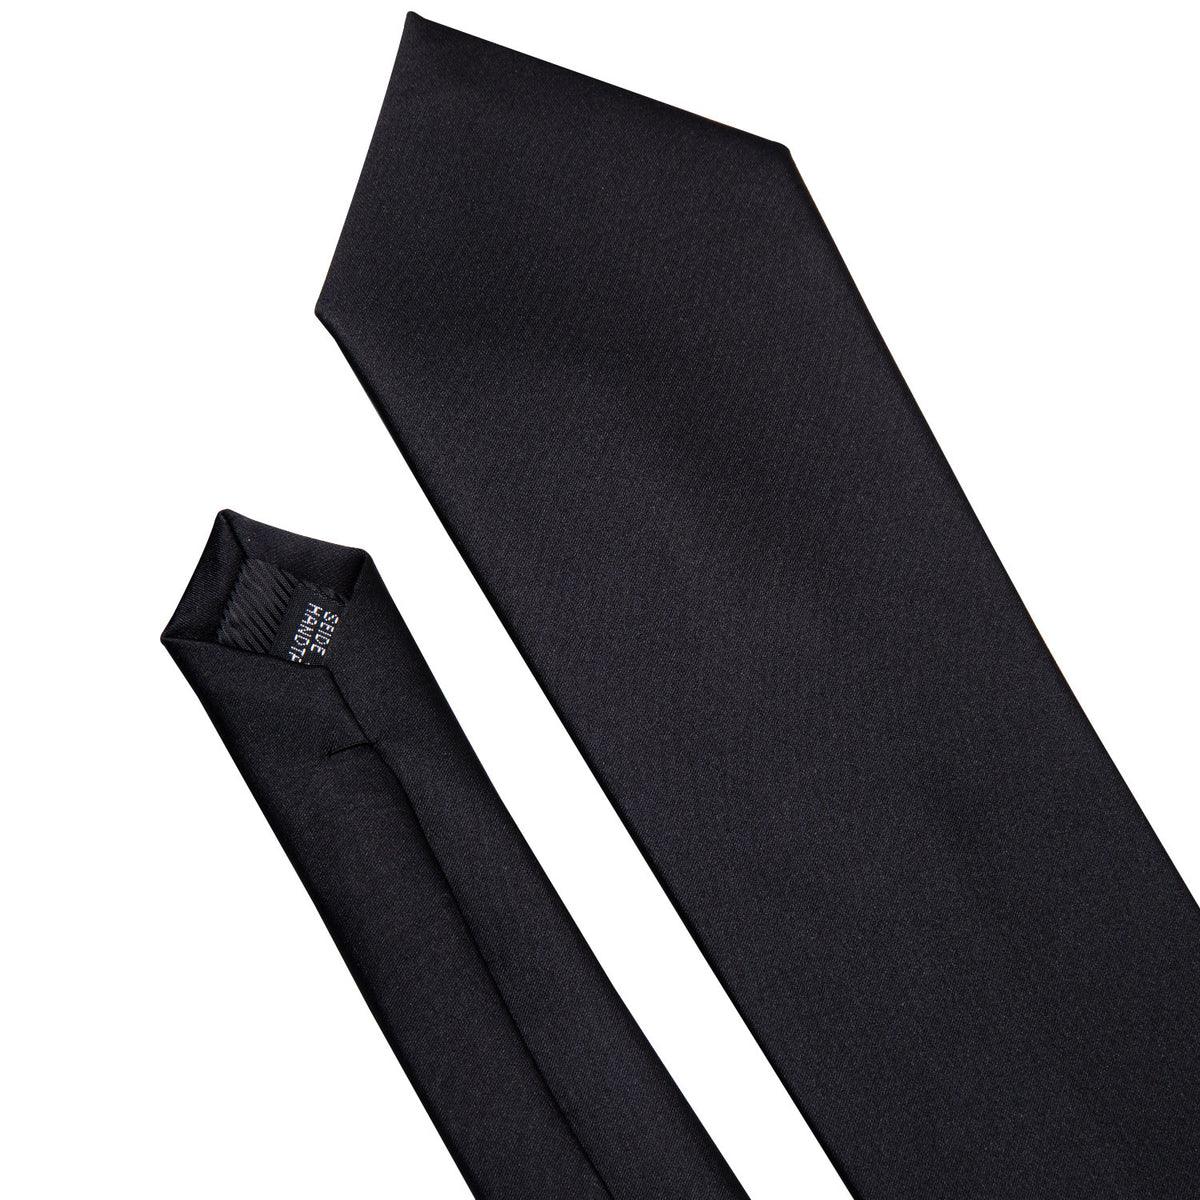 Black Solid Silk Tie Pocket Square Cufflink Set - STYLETIE